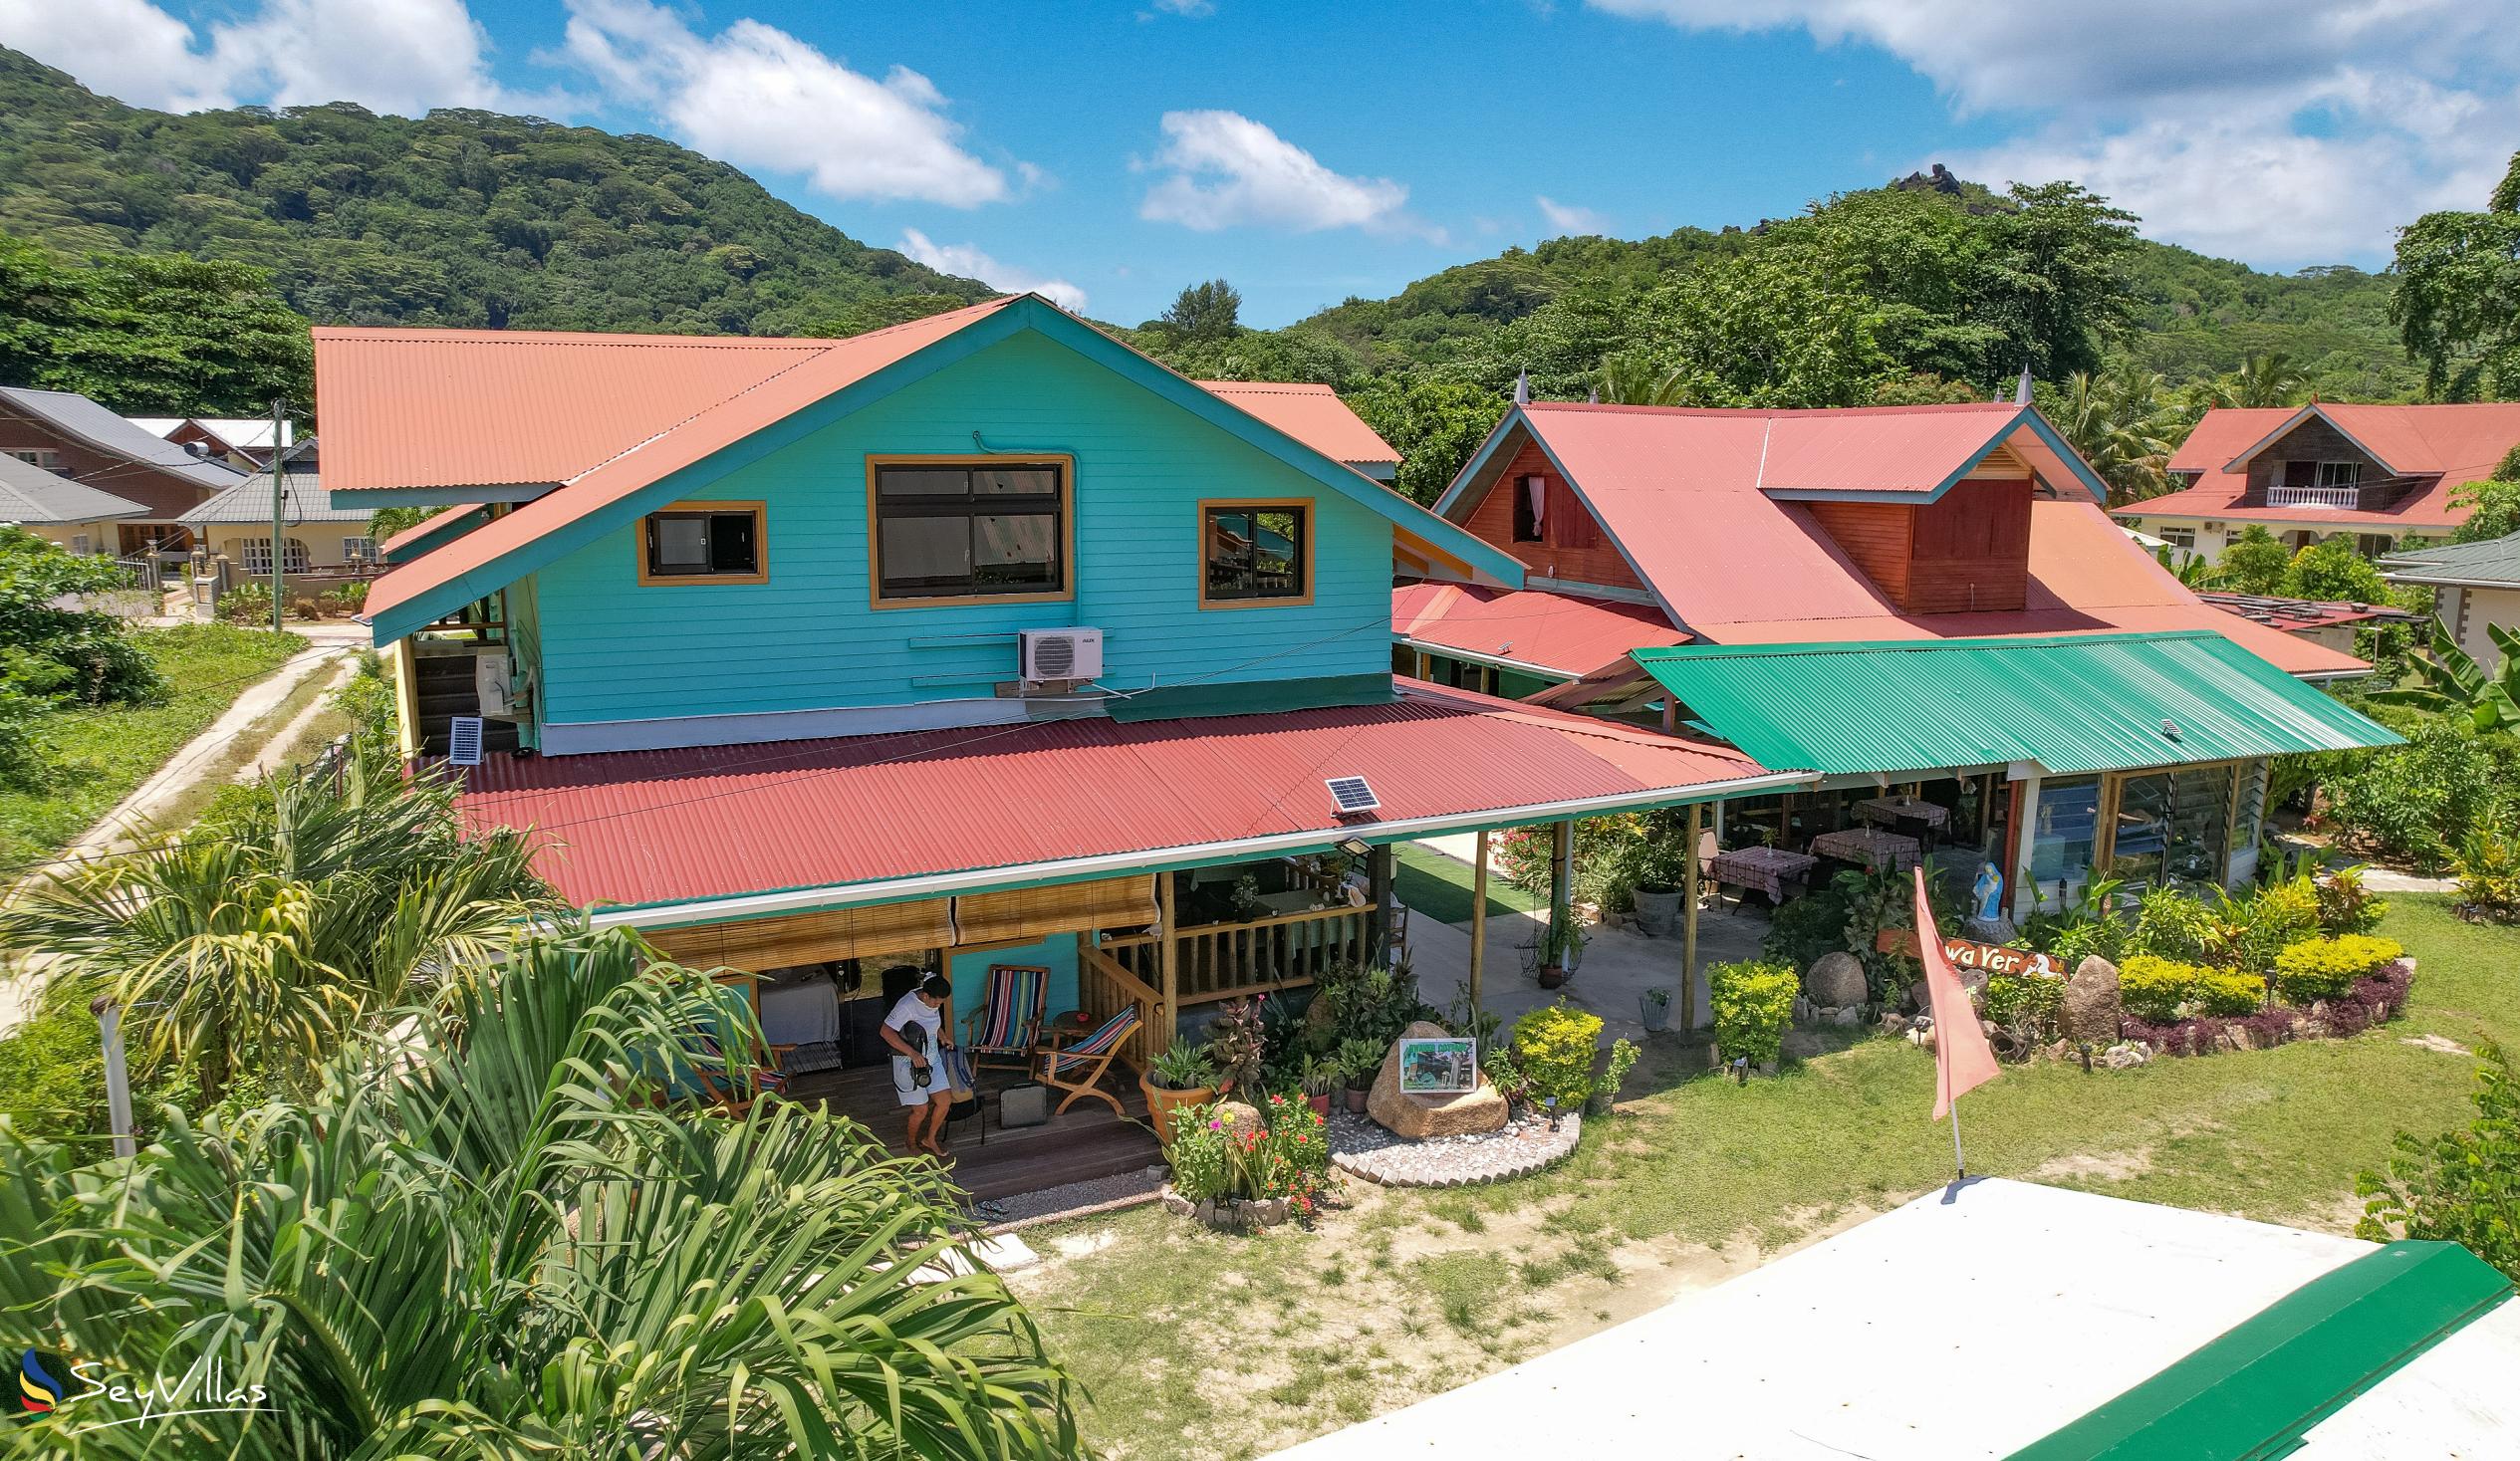 Foto 15: Bwaver Cottage - Extérieur - La Digue (Seychelles)